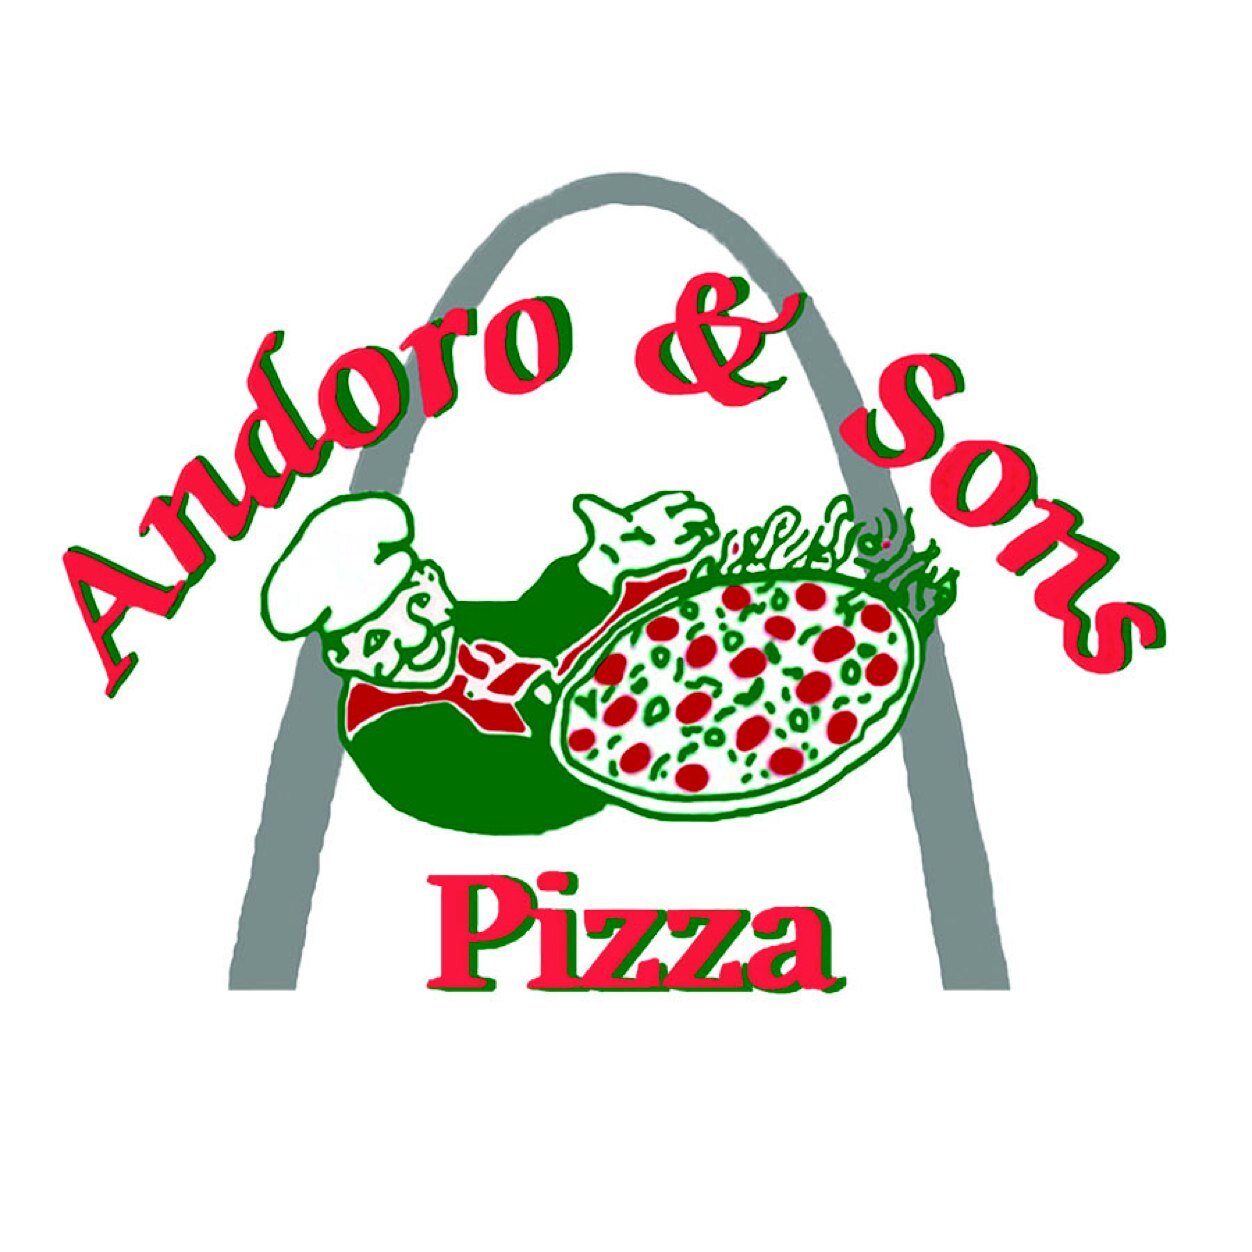 Andoro & Sons Pizza logo